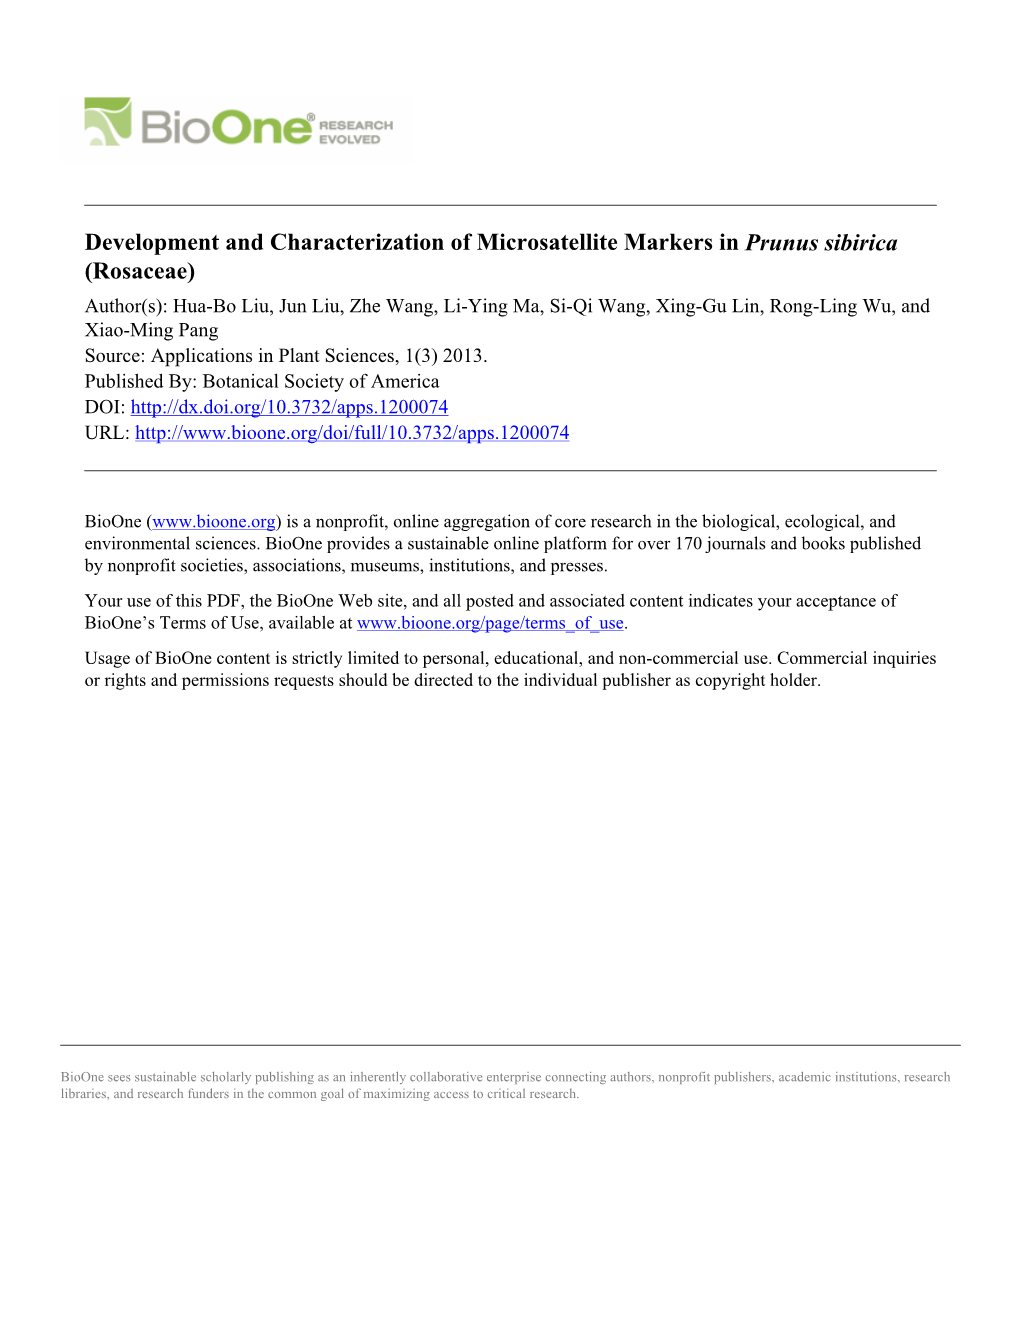 Development and Characterization of Microsatellite